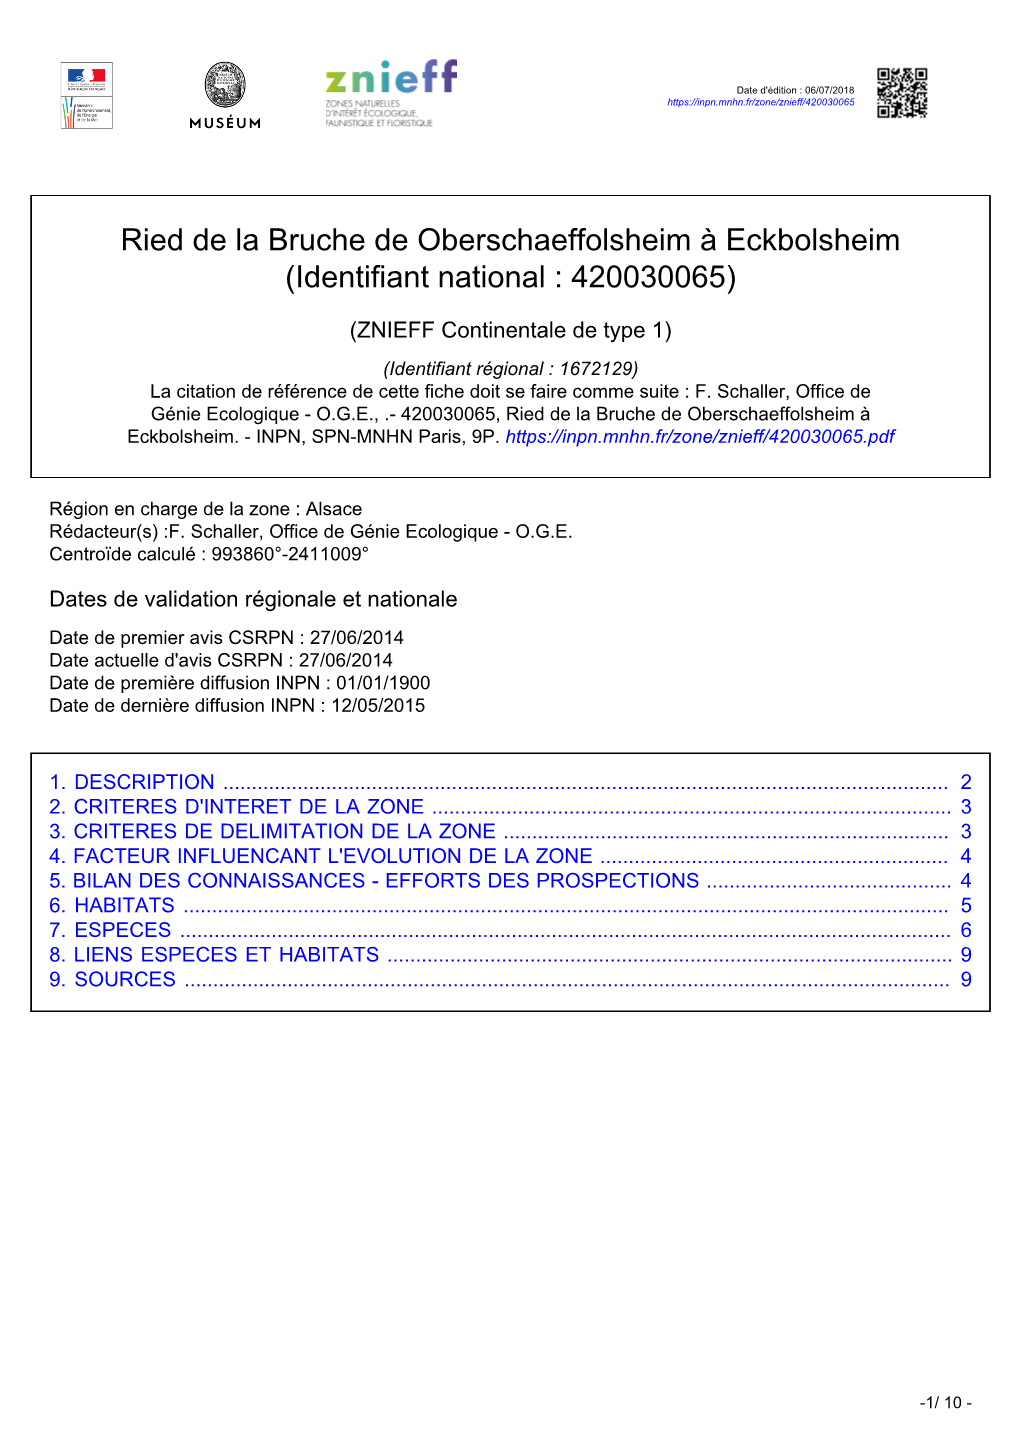 Ried De La Bruche De Oberschaeffolsheim À Eckbolsheim (Identifiant National : 420030065)